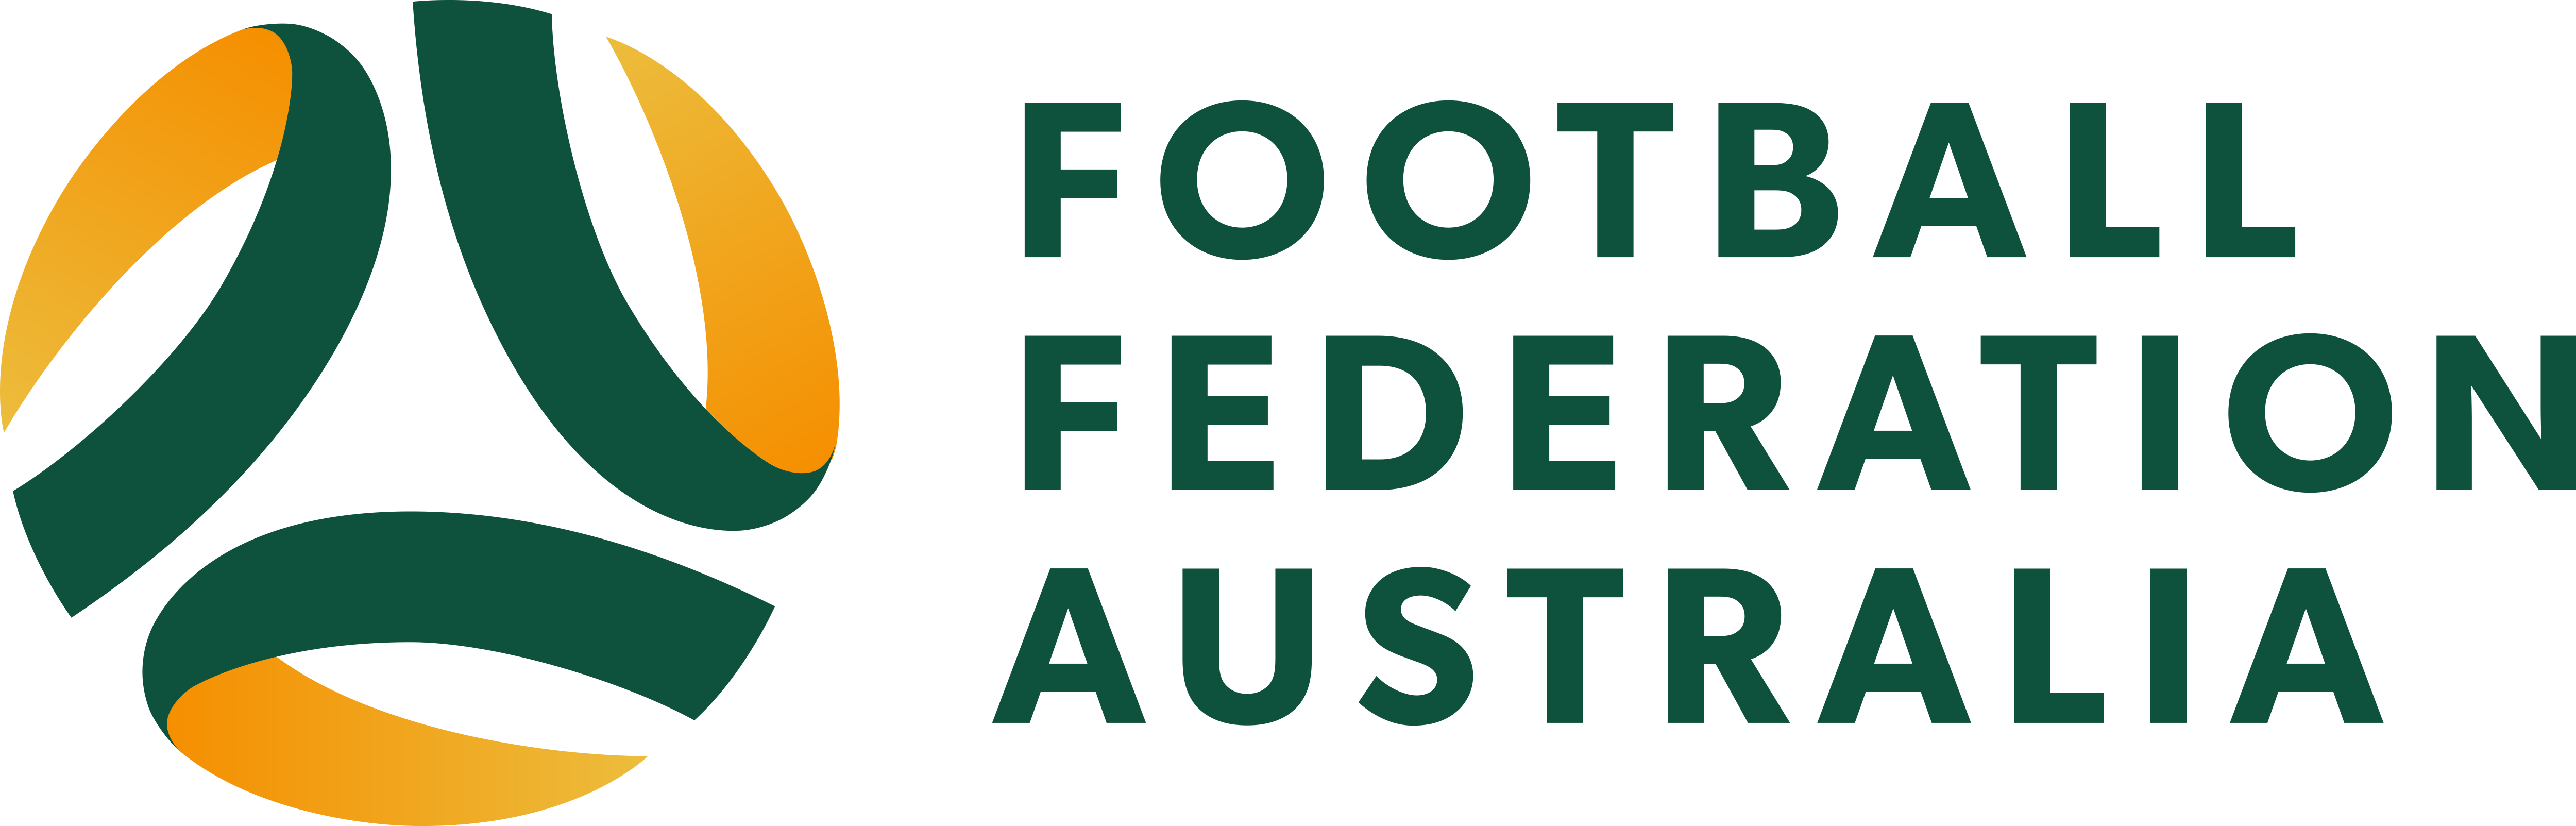 澳大利亞足球協會會徽